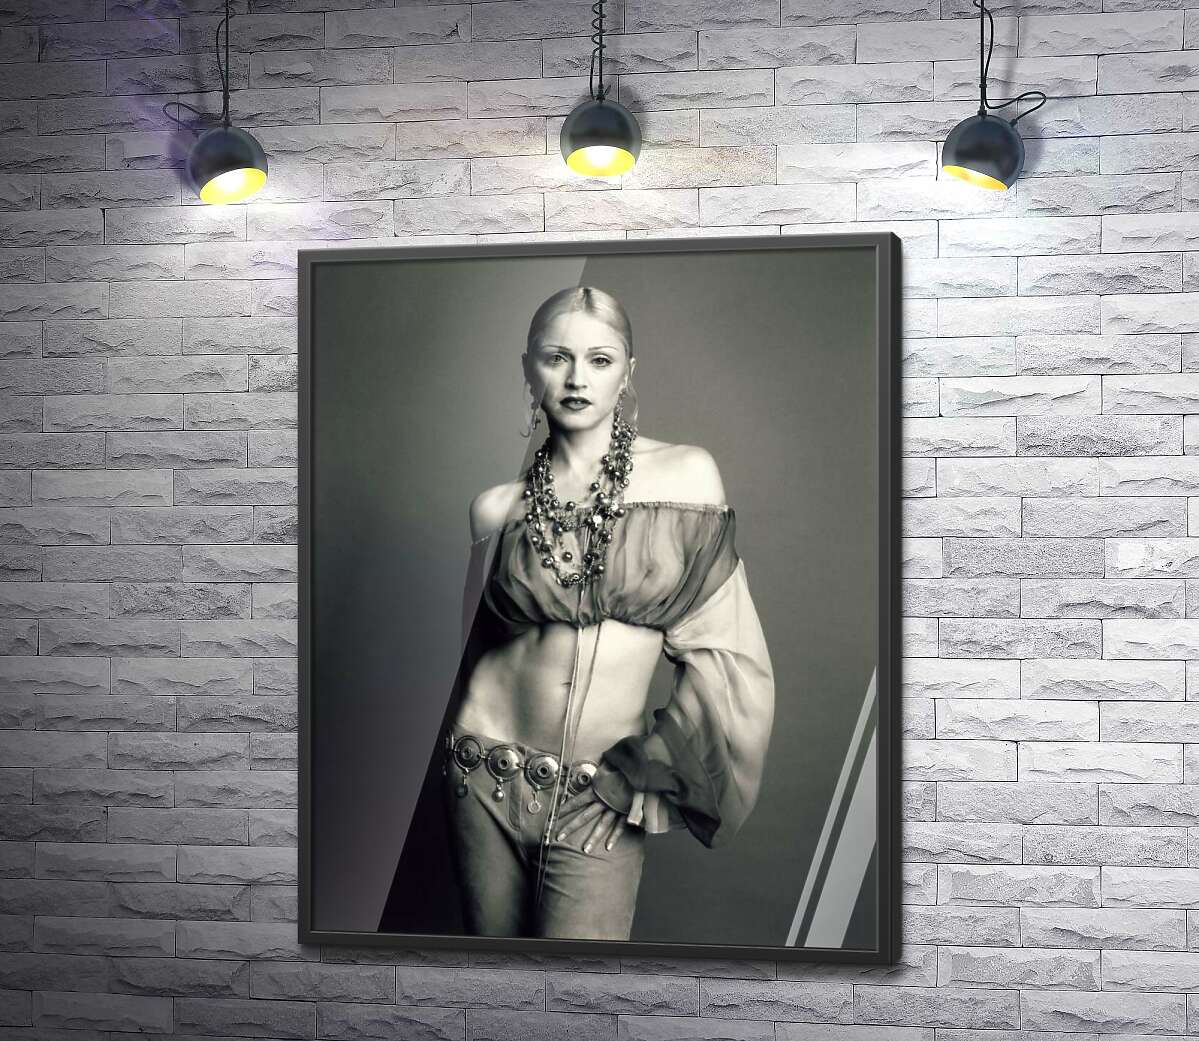 постер Стройная Мадонна (Madonna) позирует в прозрачном топе